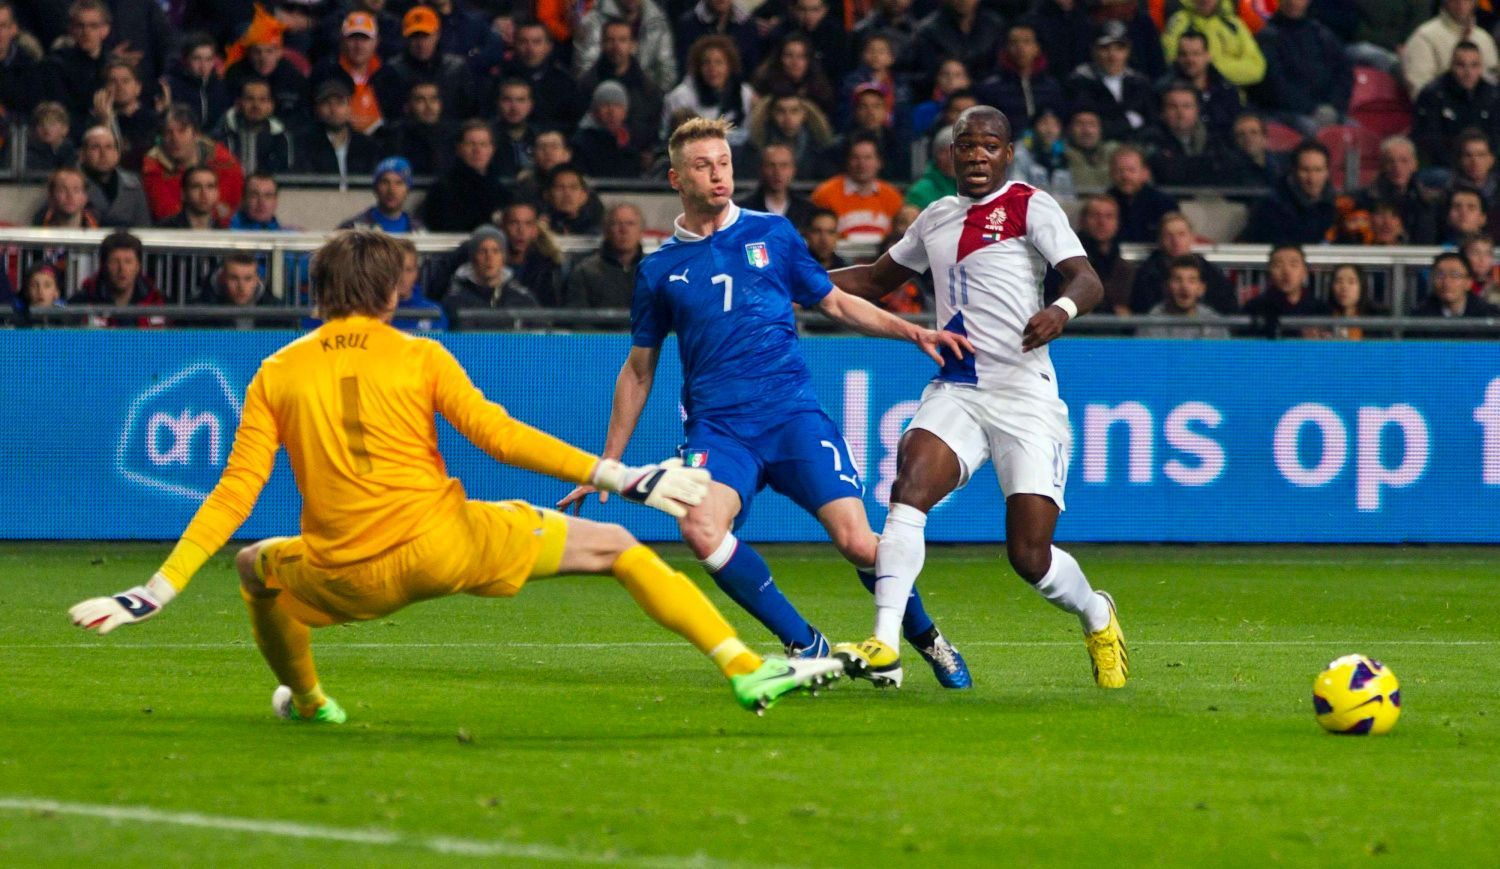 Fotbal, Nizozemsko - Itálie: Tim Krul a  Ola John (vpravo) - Ignazio Abate